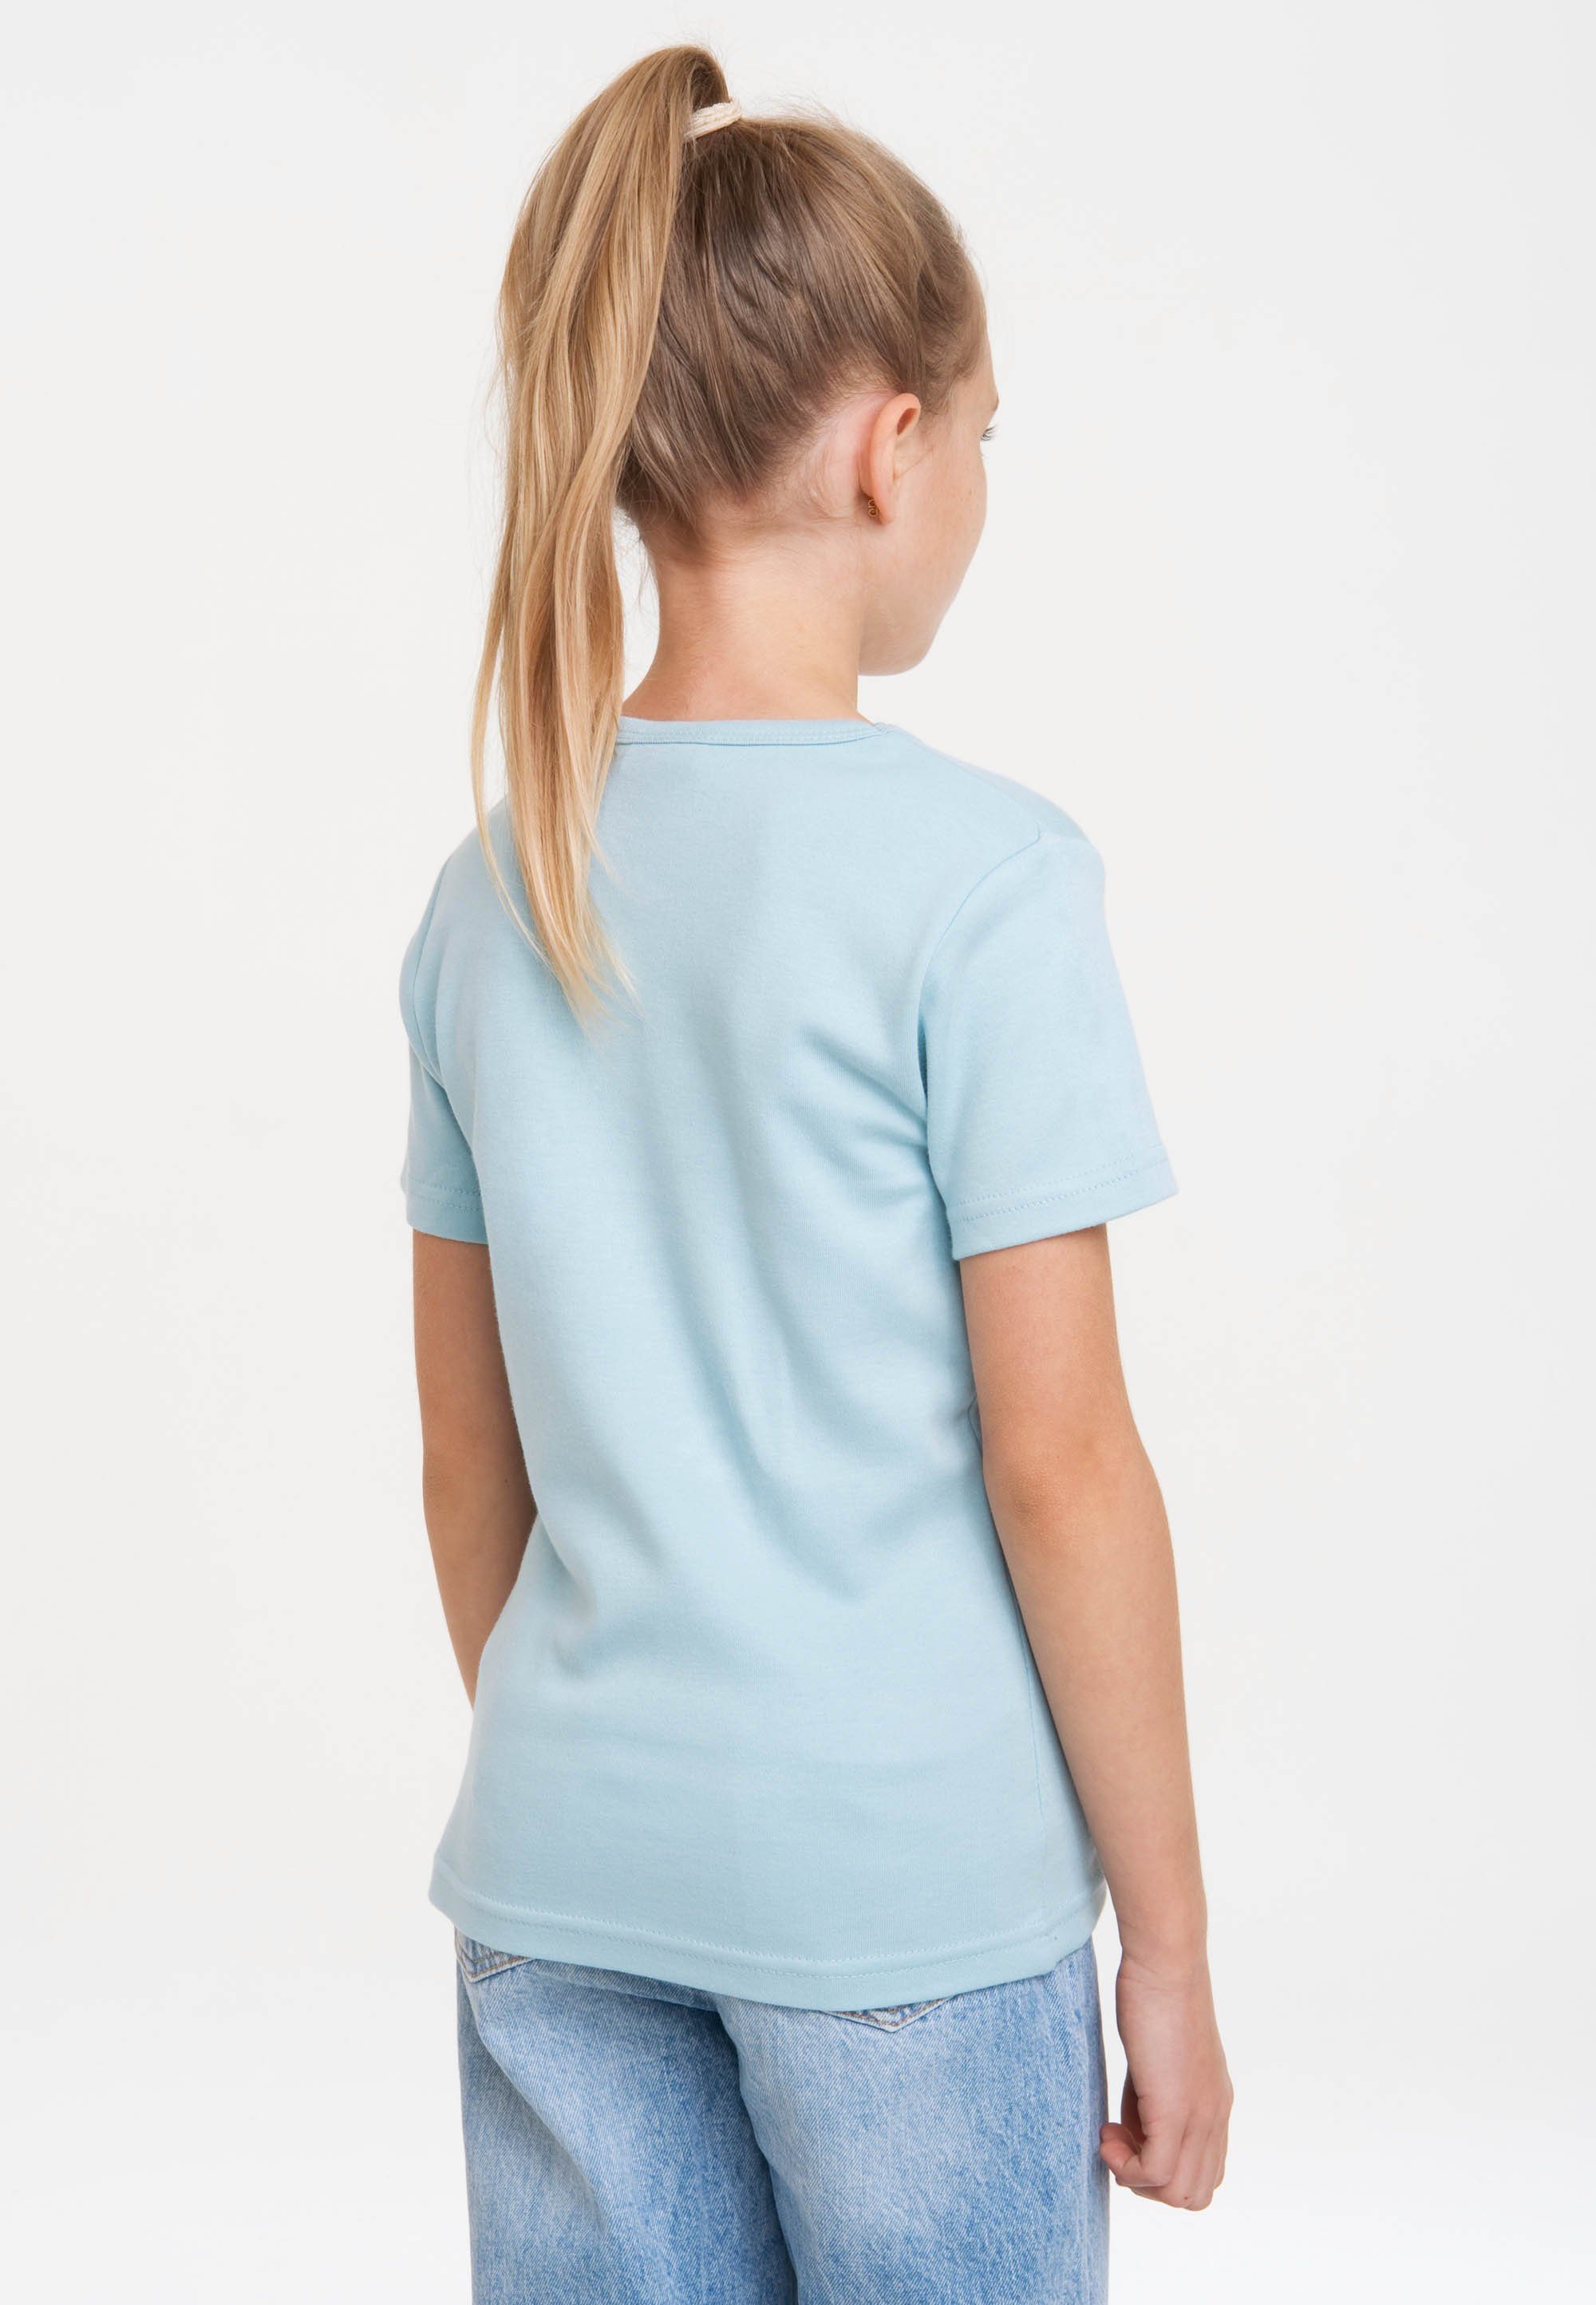 Maus LOGOSHIRT mit hellblau Die T-Shirt Originaldesign lizenziertem